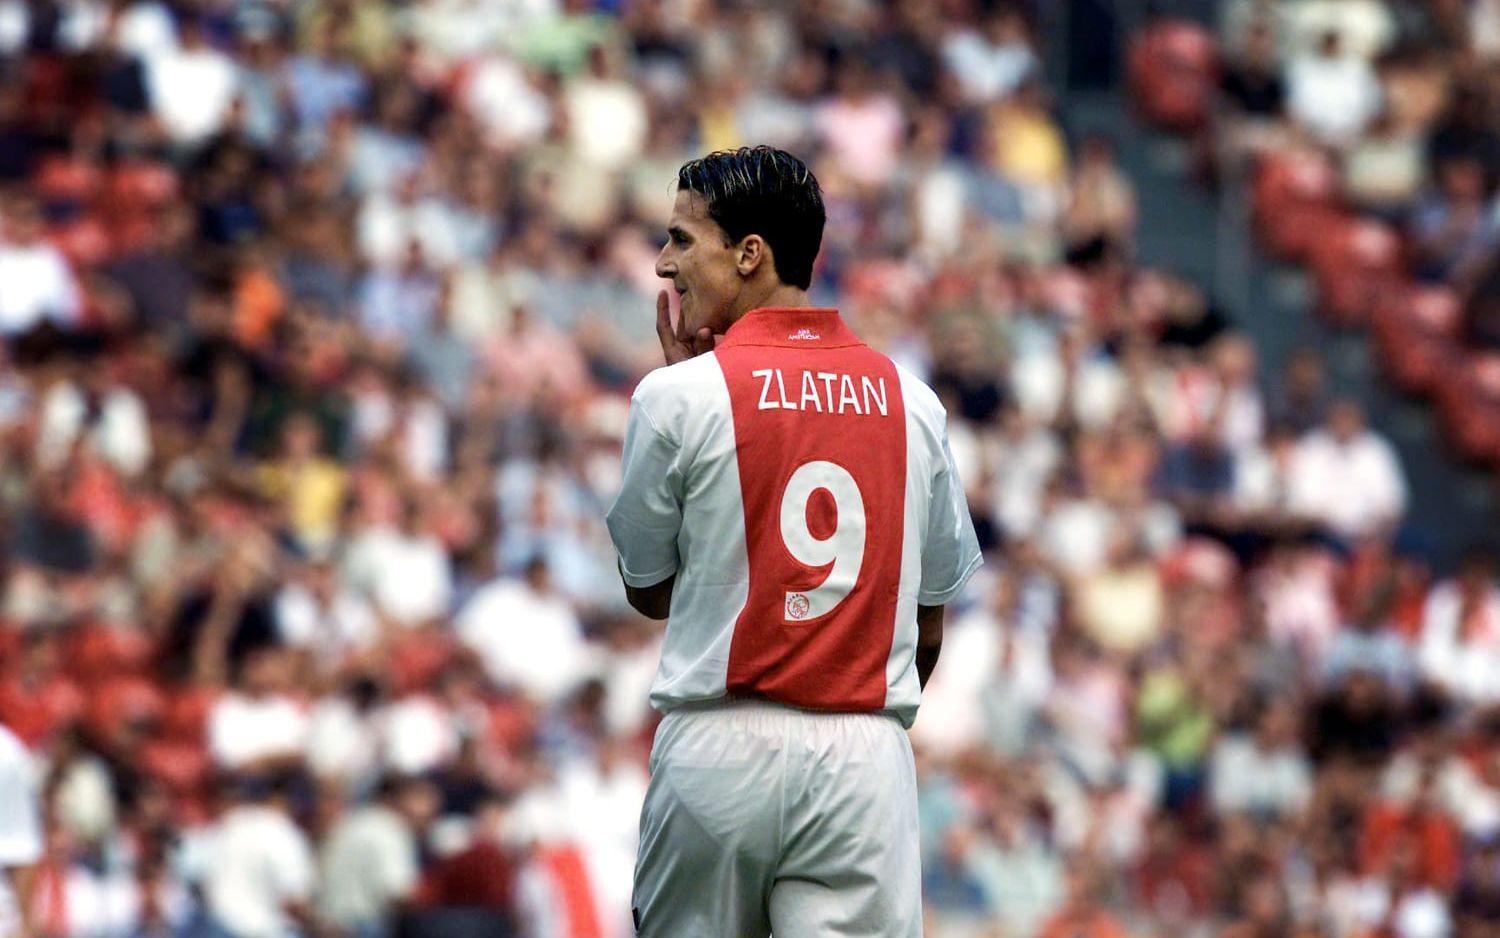 2001 såldes Zlatan för över 80 miljoner kronor till Ajax. 